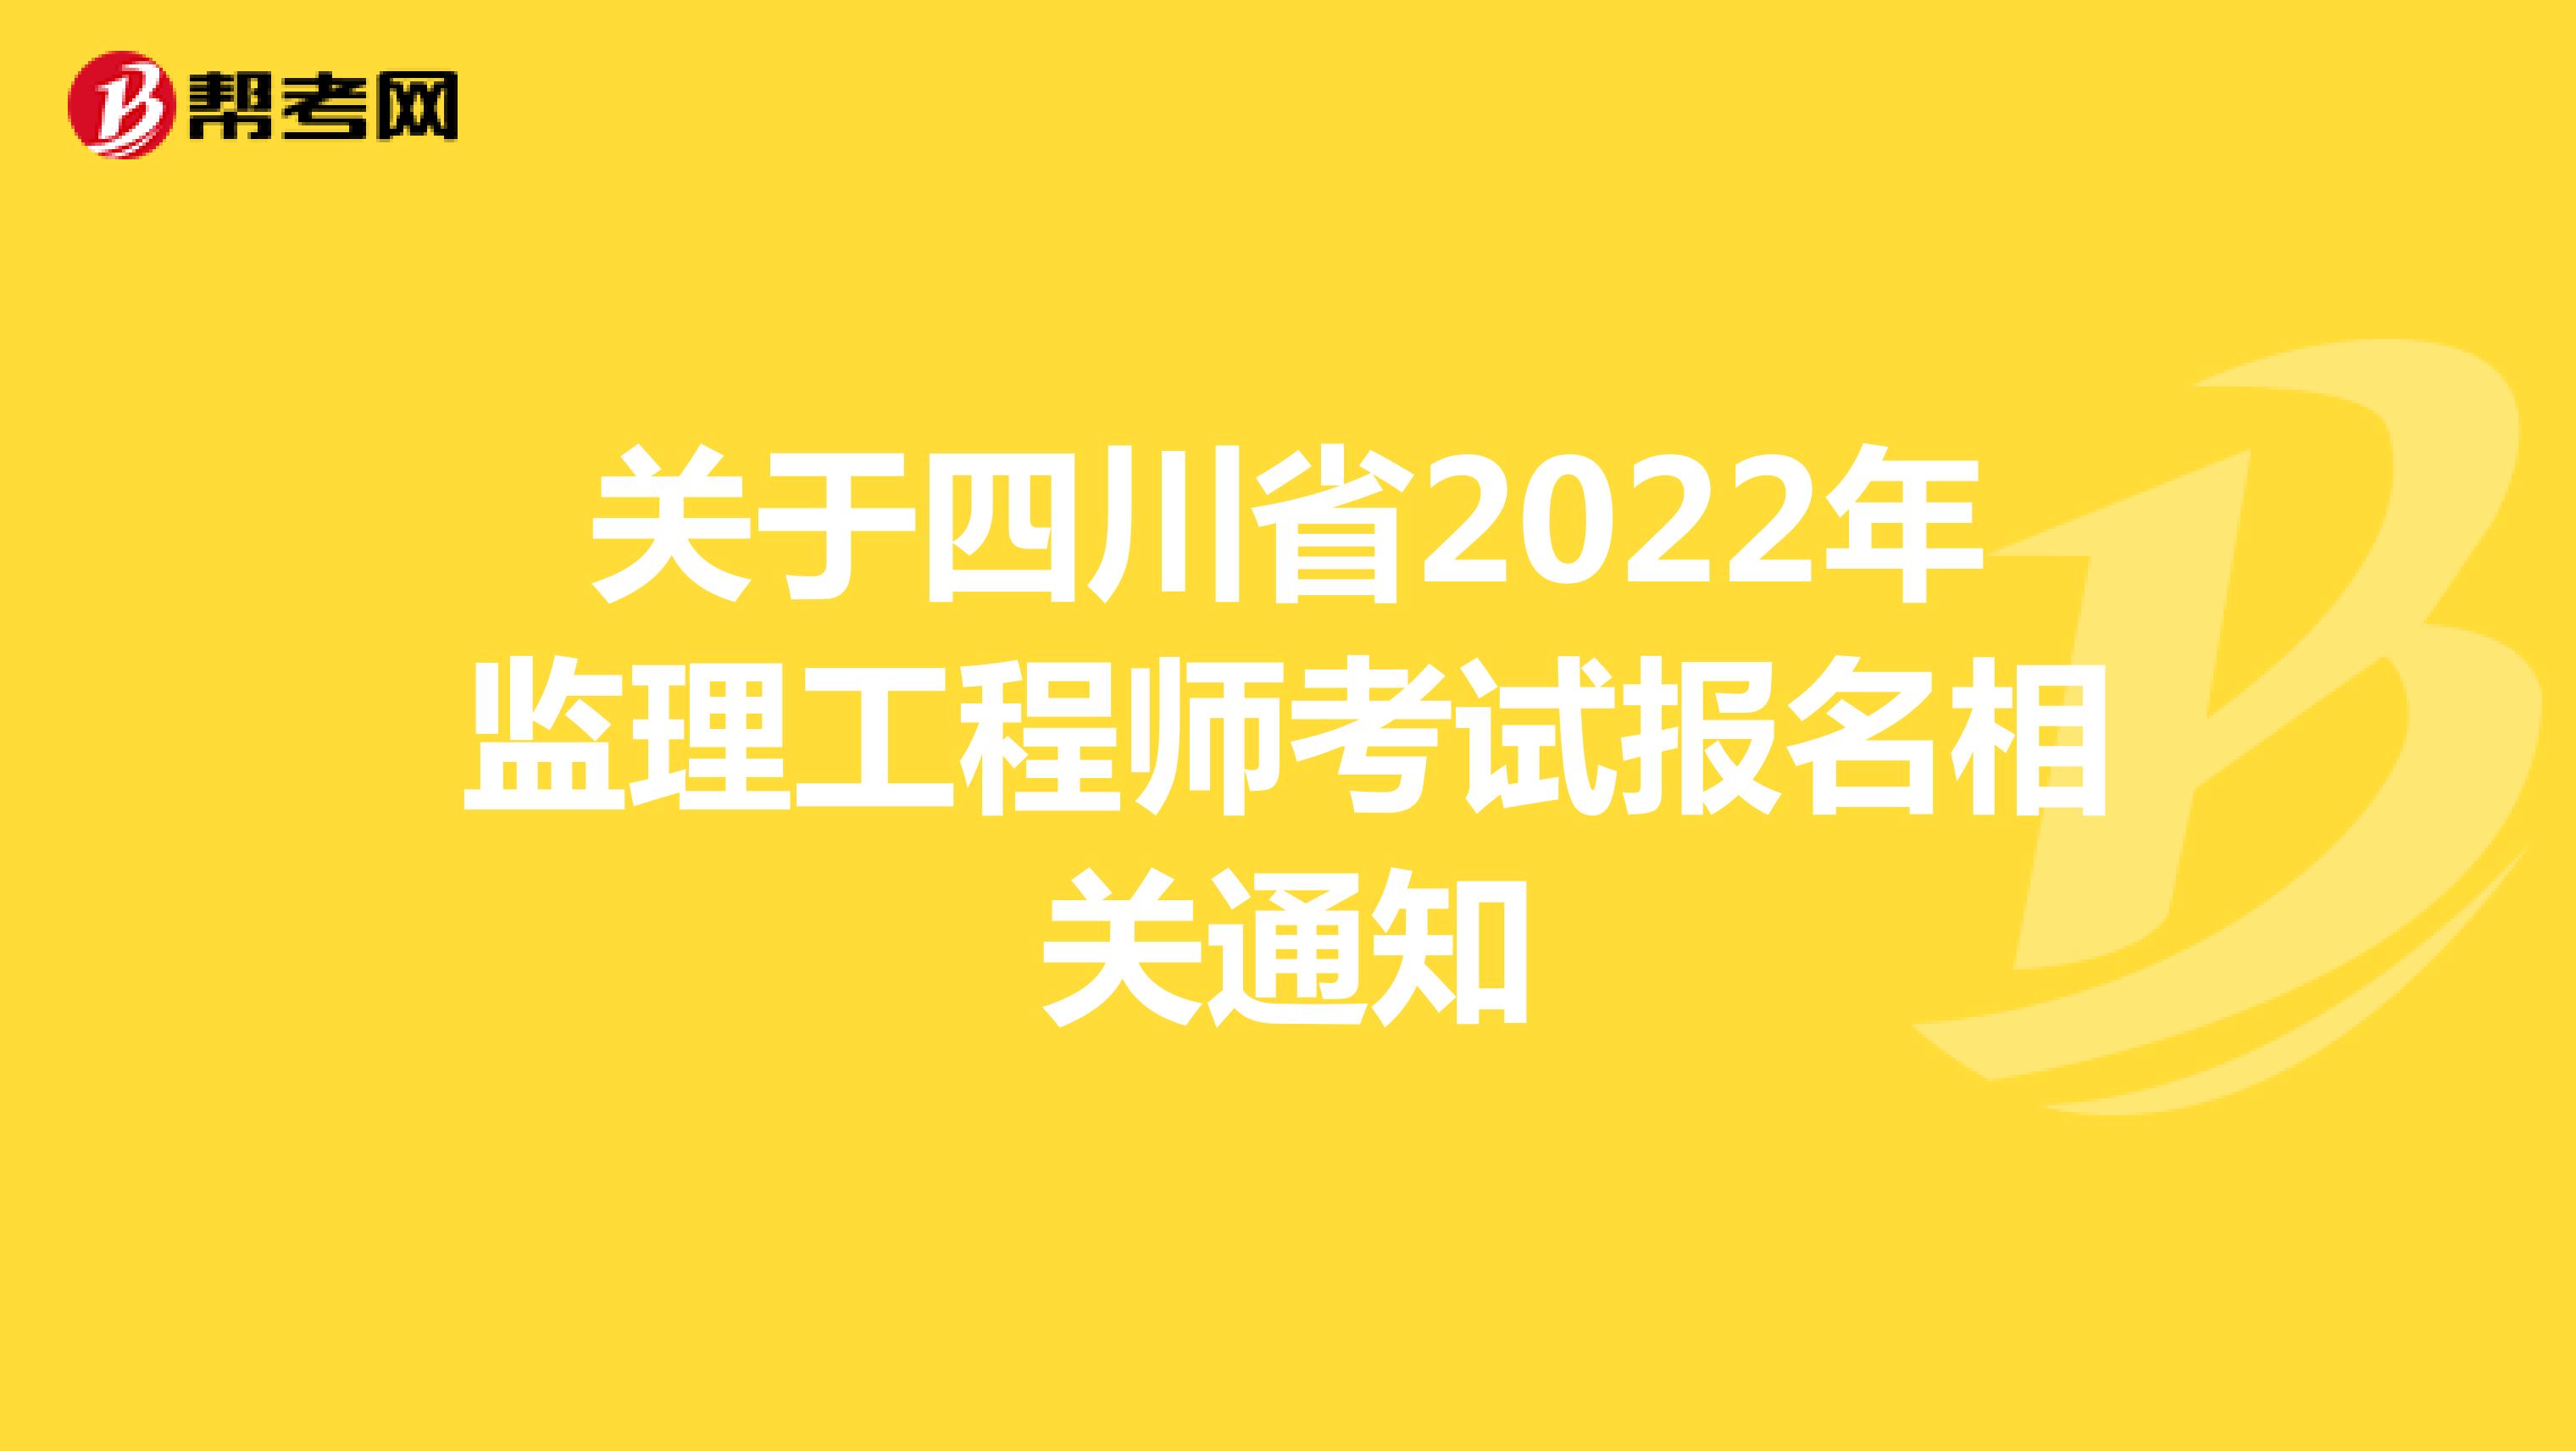 關于四川省2022年監理工程師考試報名相關通知